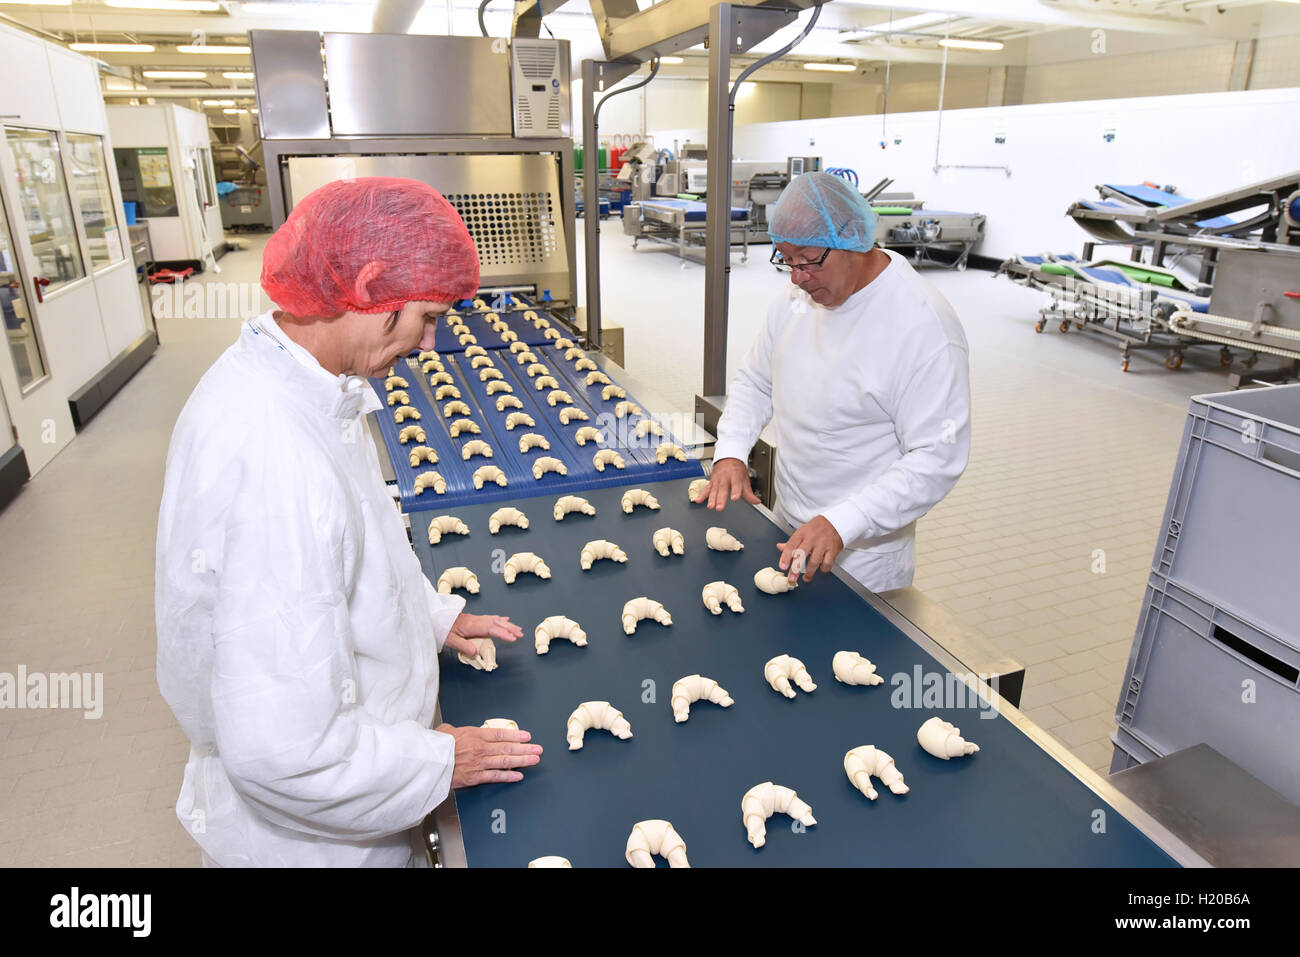 Arbeiter am Fließband in einer Auflaufform Fabrik mit croissants  Stockfotografie - Alamy